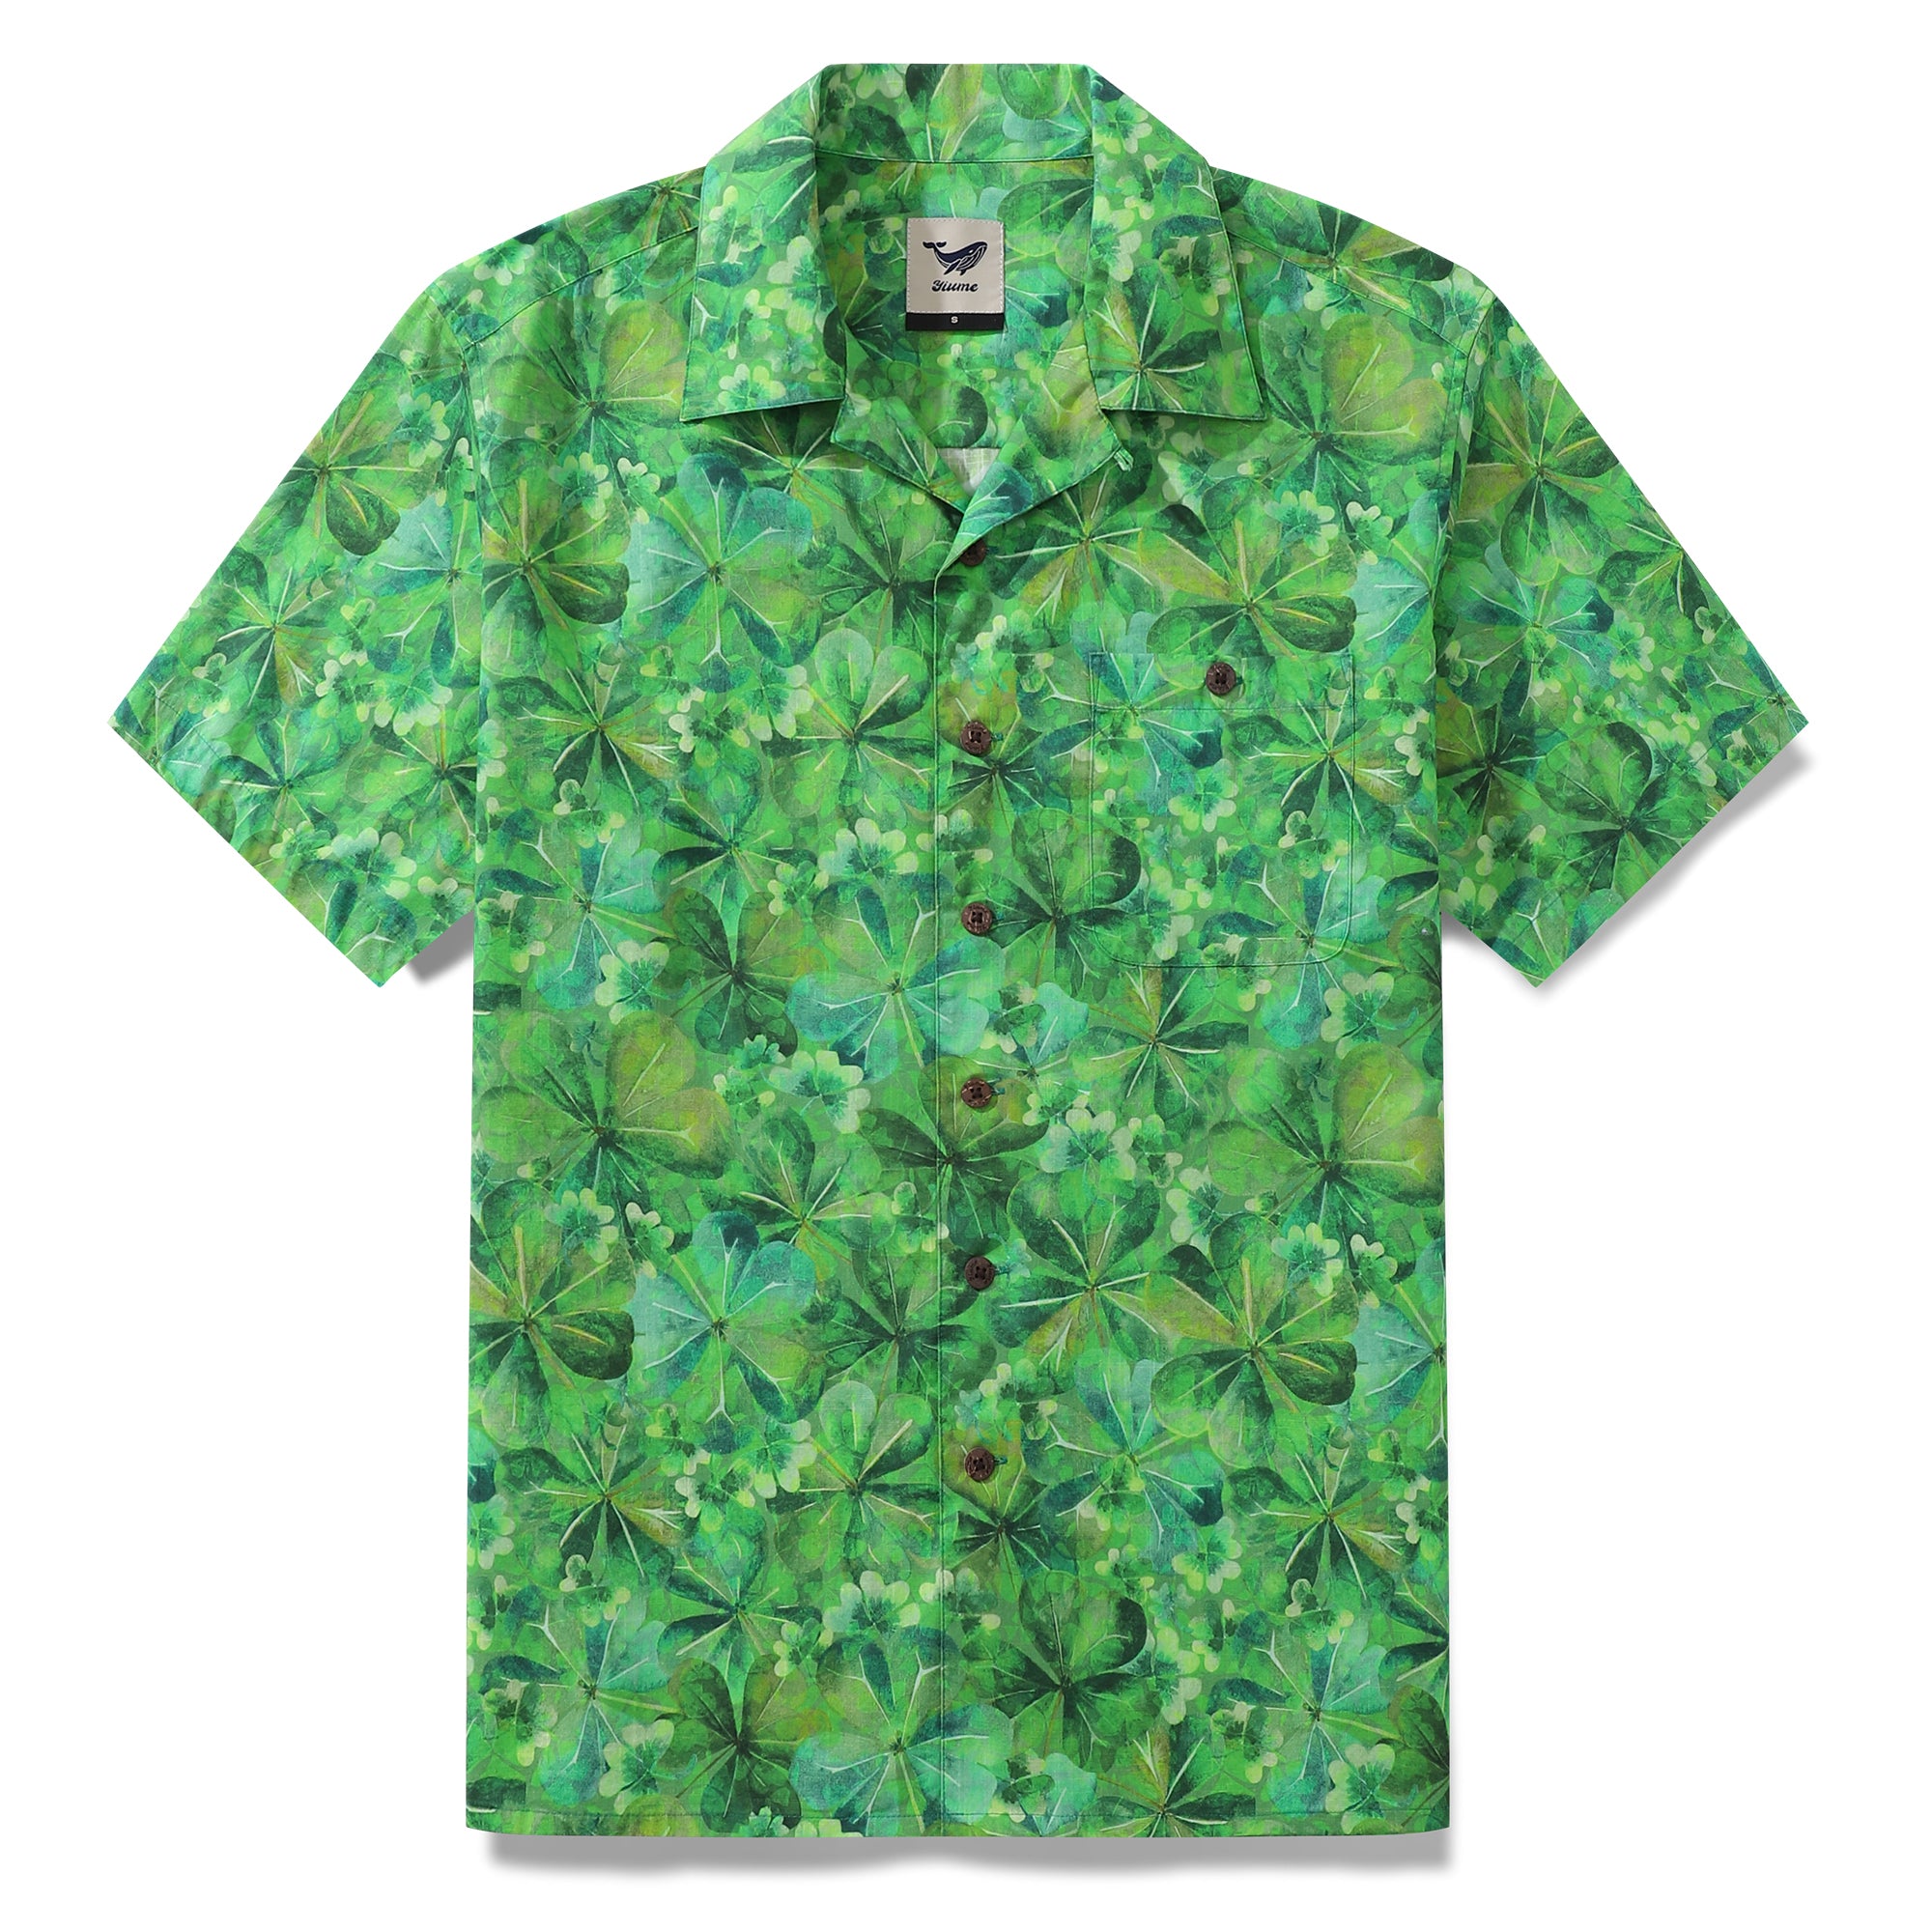 CALLE. Camisa hawaiana del día de San Patricio para hombre Shamrock de Samantha O' Malley camisa Camp Collar 100% algodón